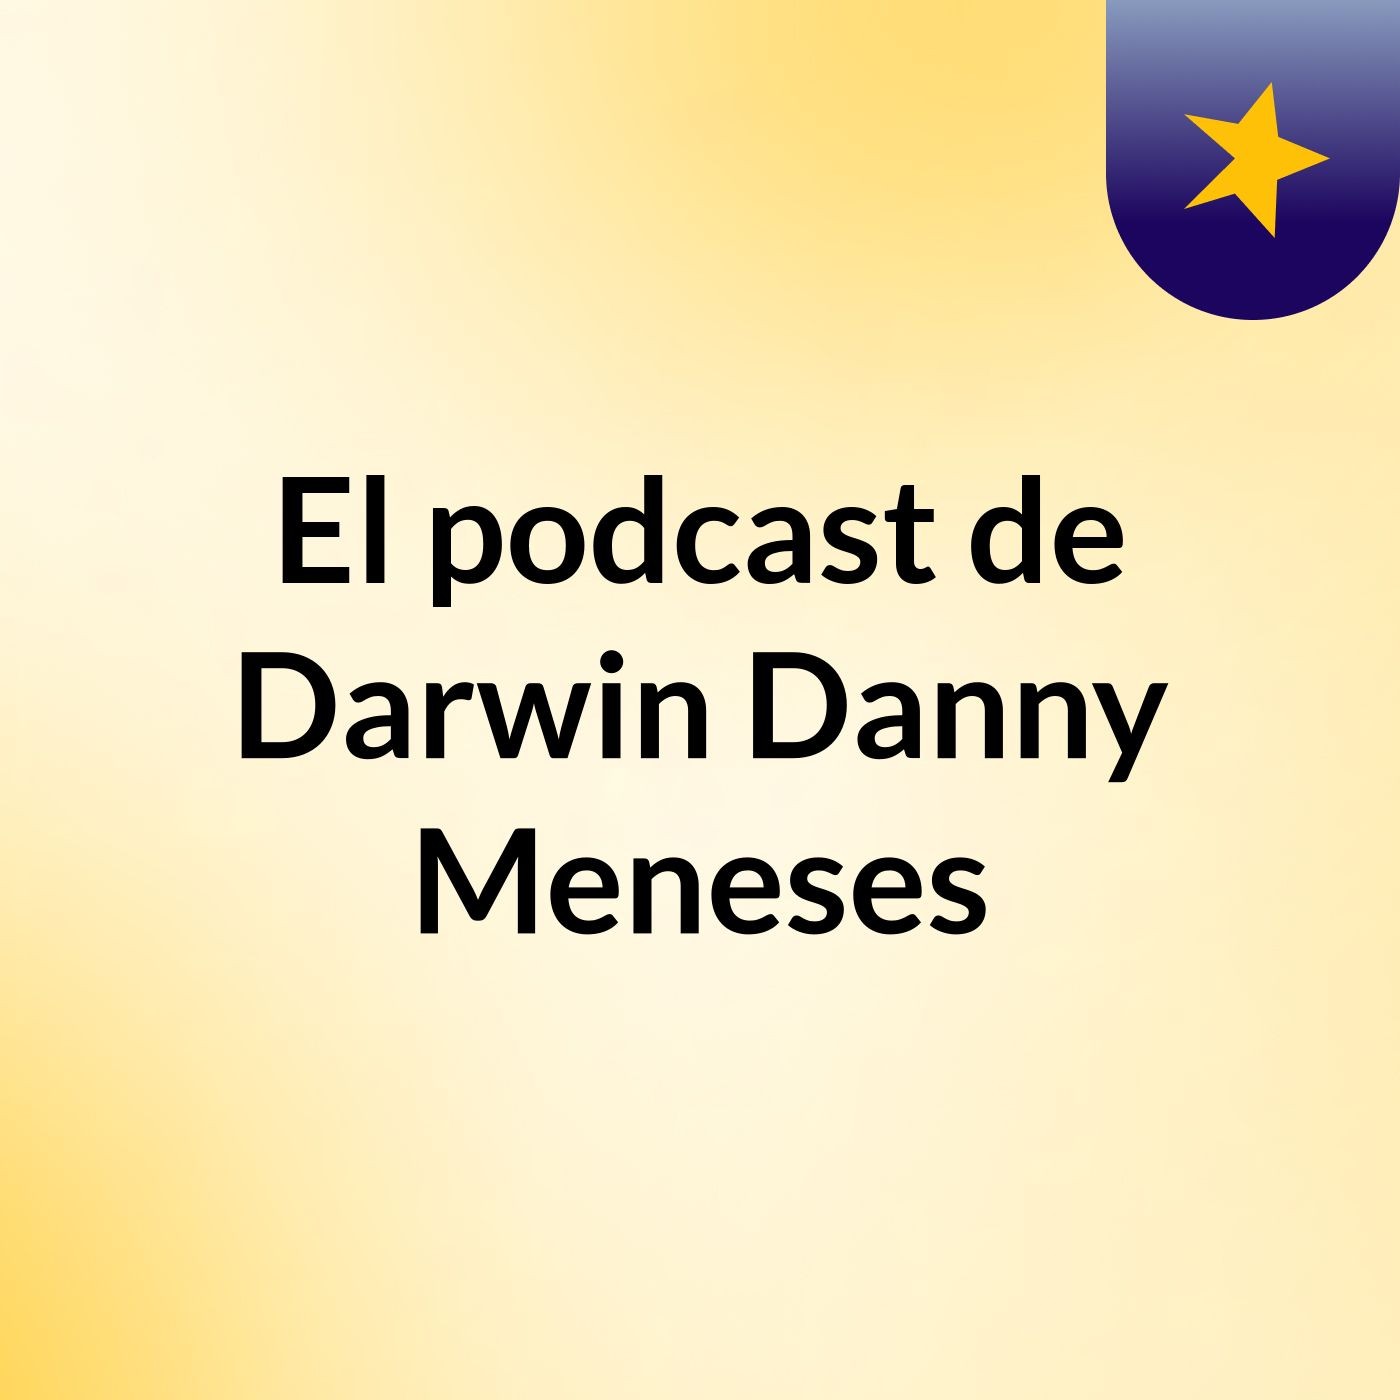 El podcast de Darwin Danny Meneses